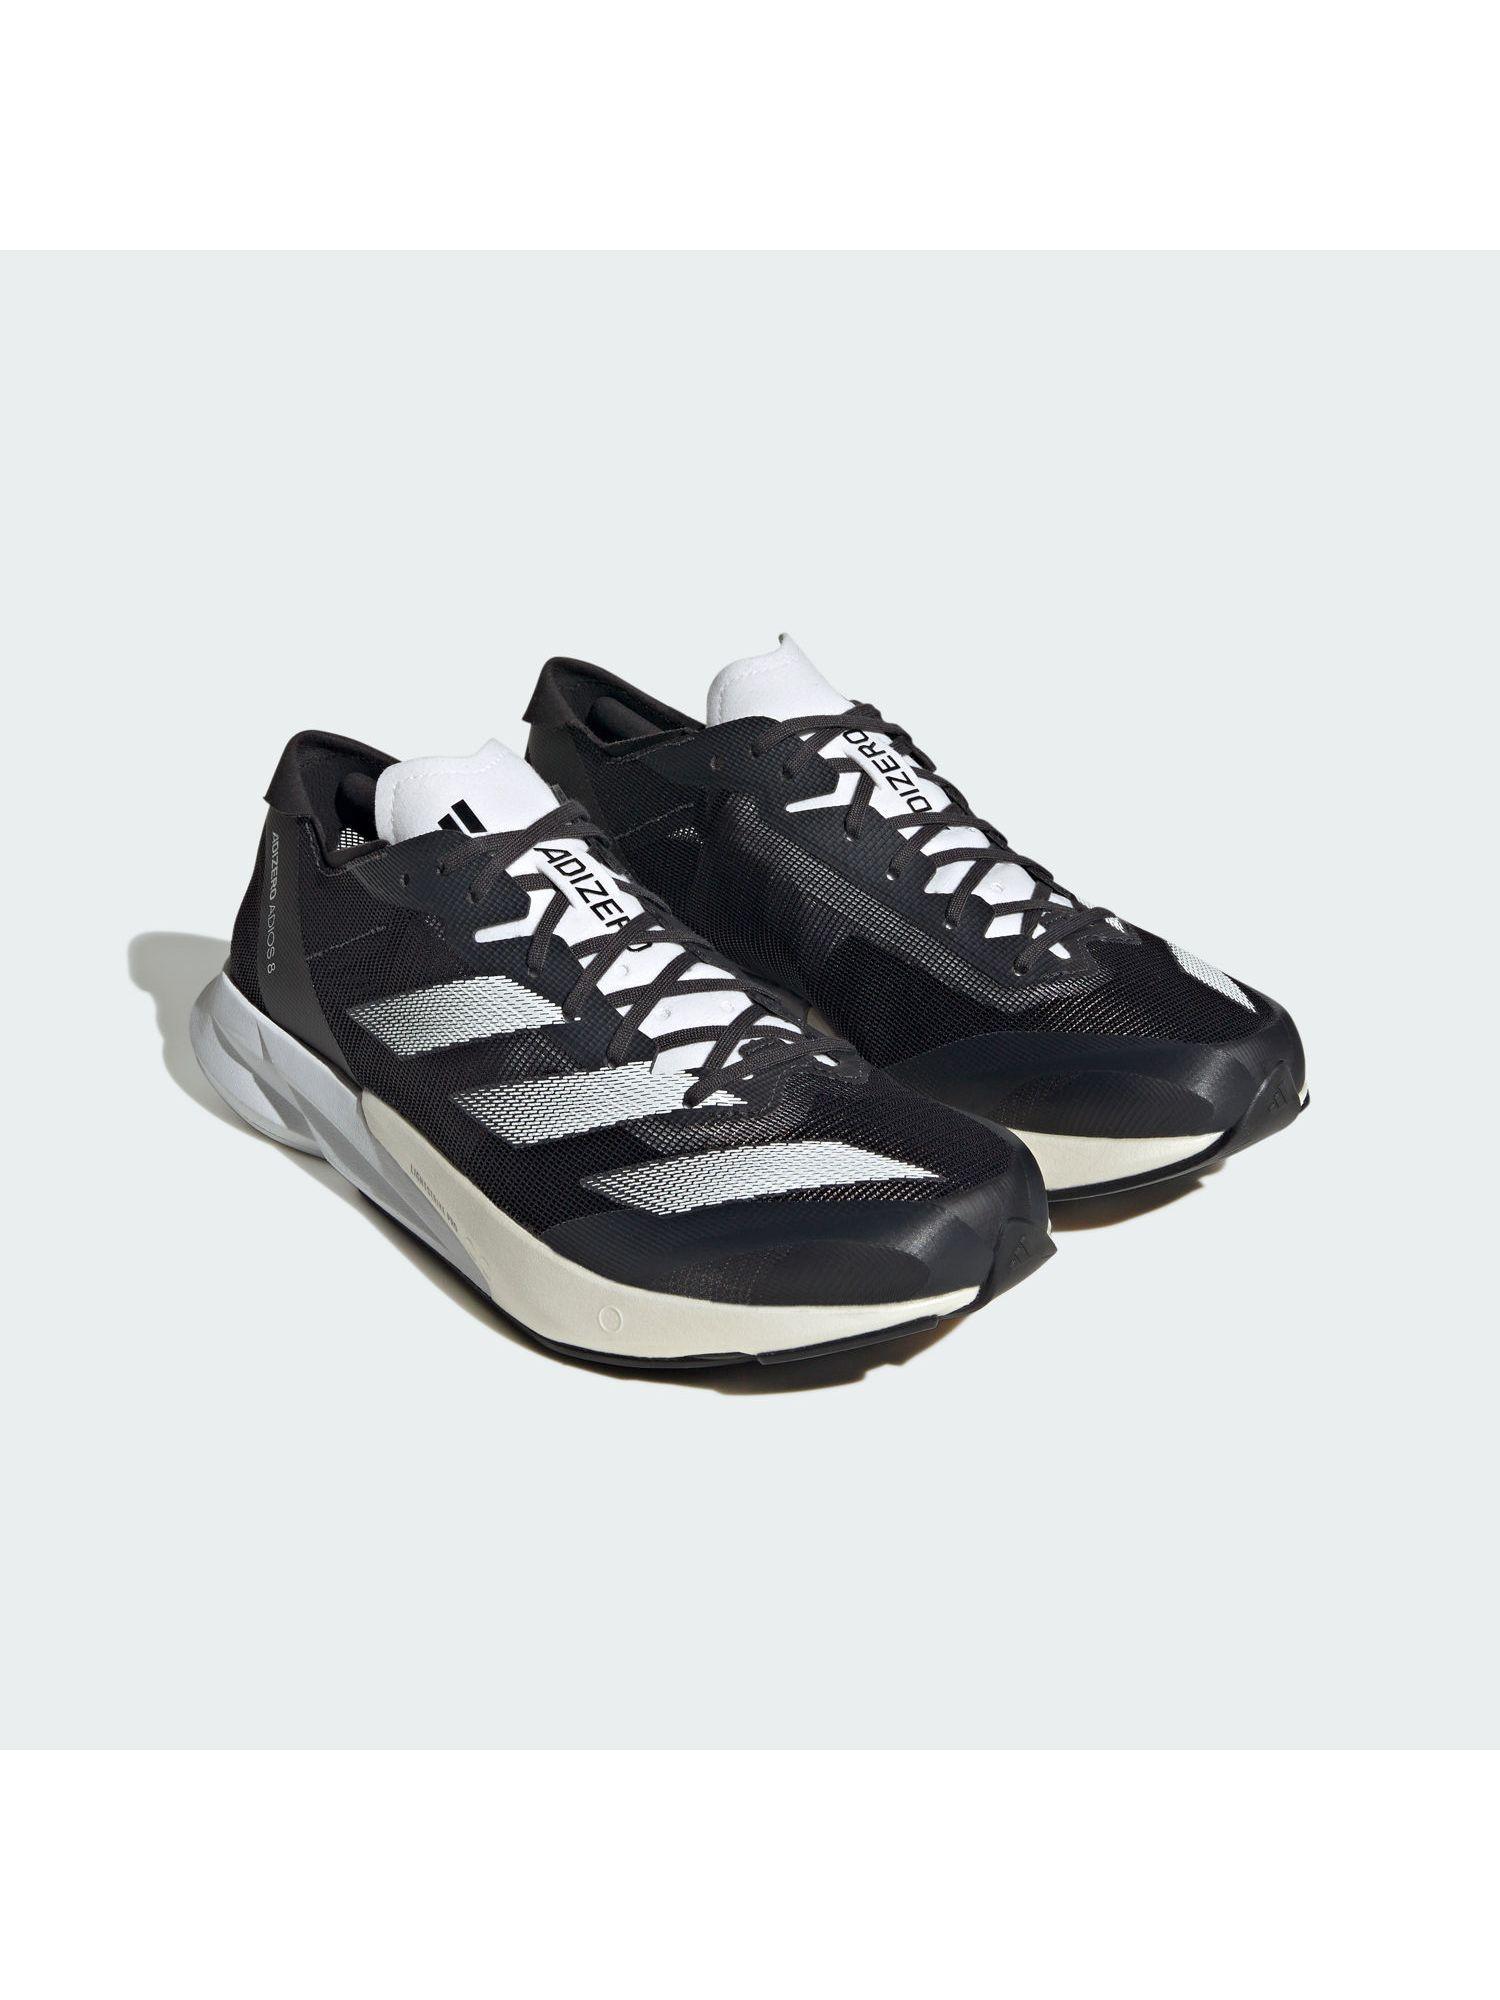 adizero adios 8 m men grey running shoes